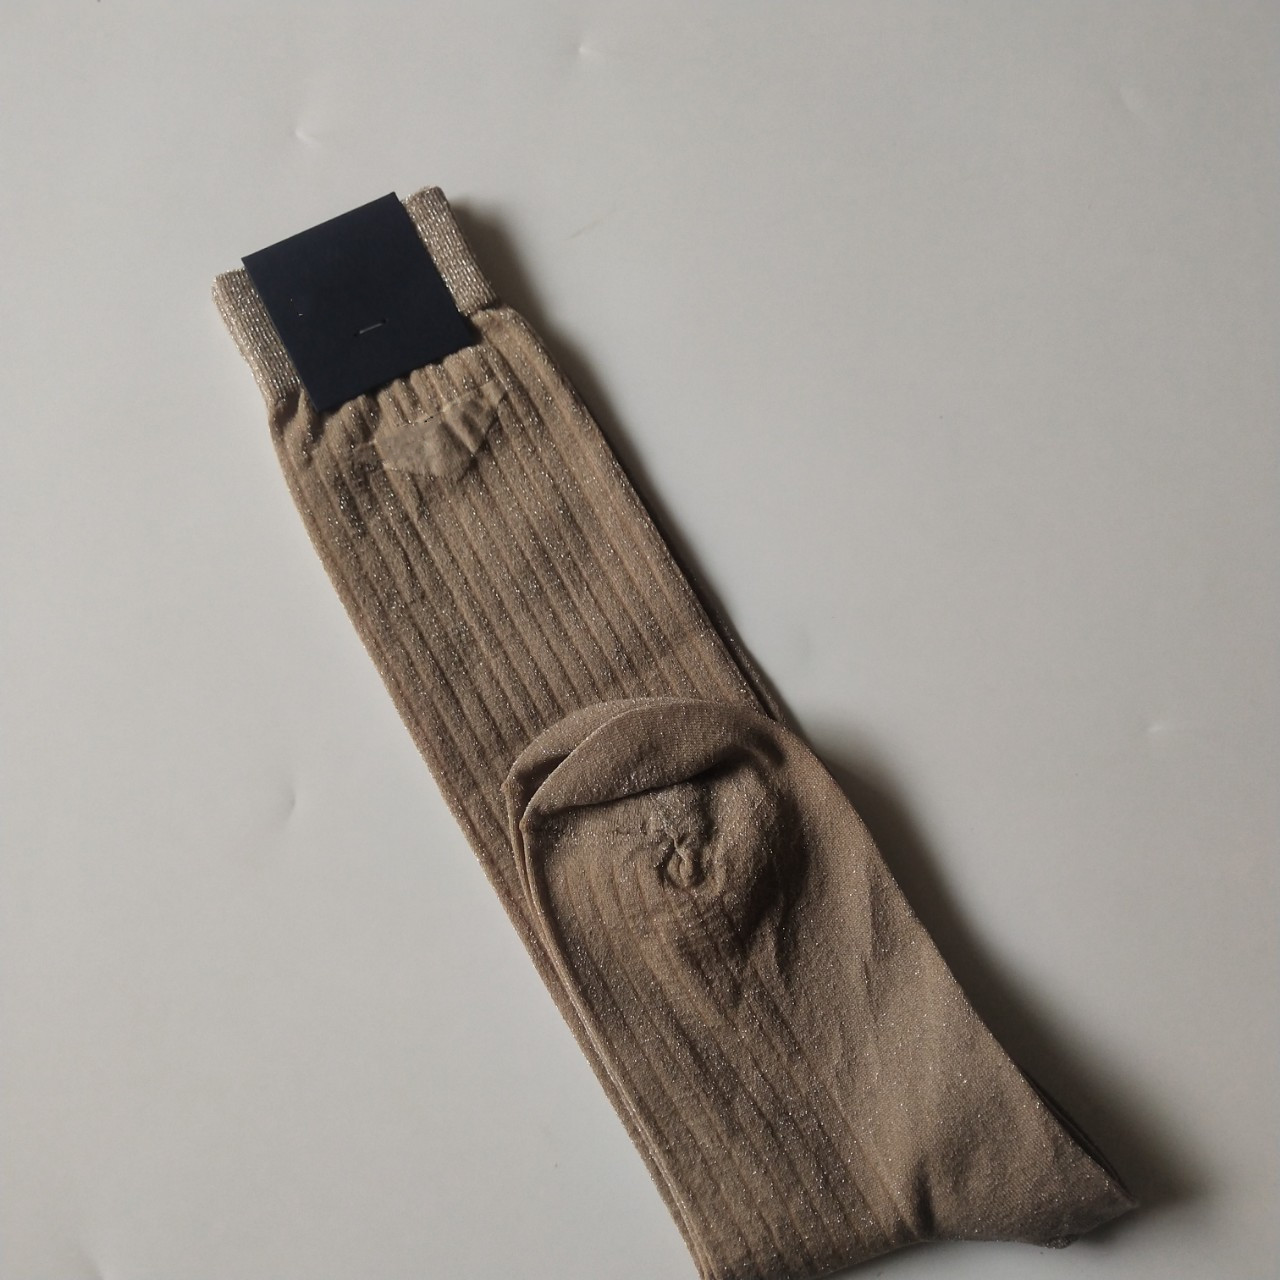 جوارب الذهب الصيفي والحرير الفضي للسيدات الصلبة رقيقة الجوارب العصرية الجوارب الجوارب القطن على شكل الساق